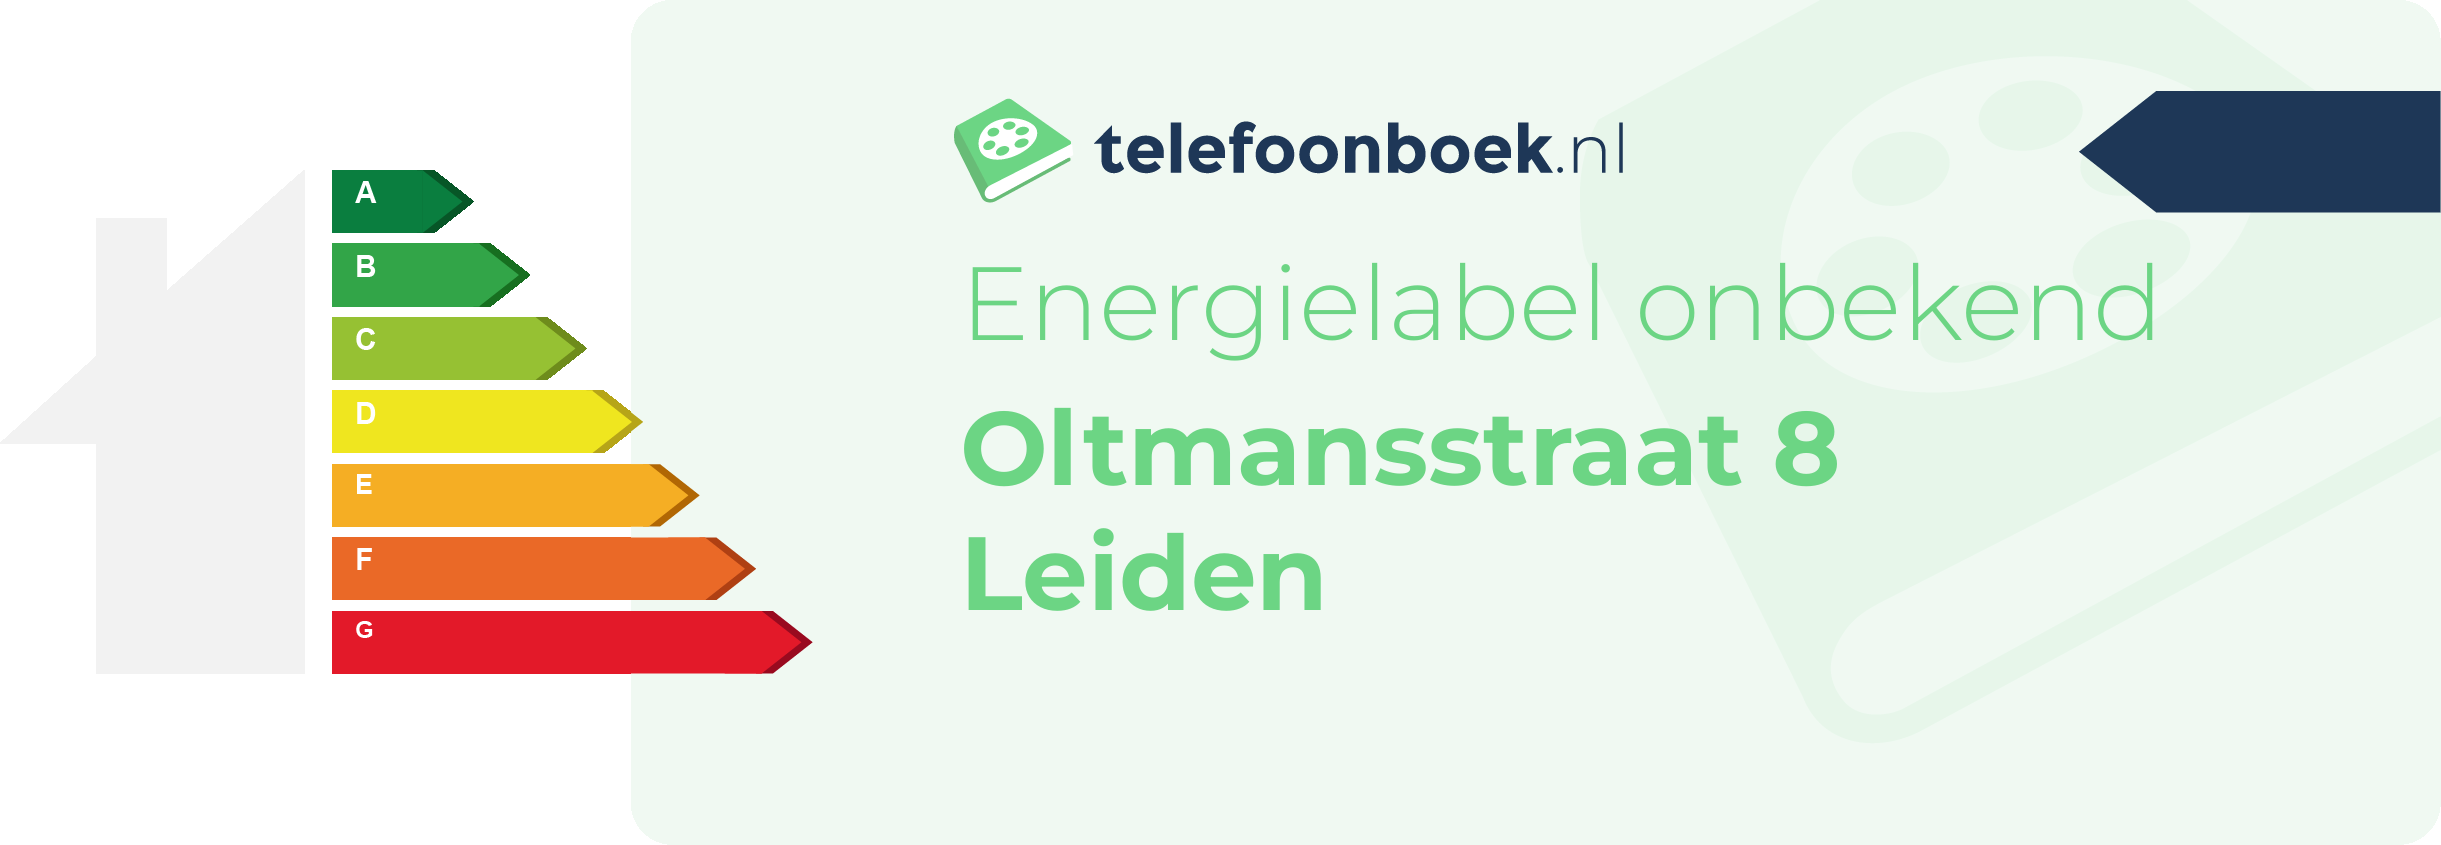 Energielabel Oltmansstraat 8 Leiden